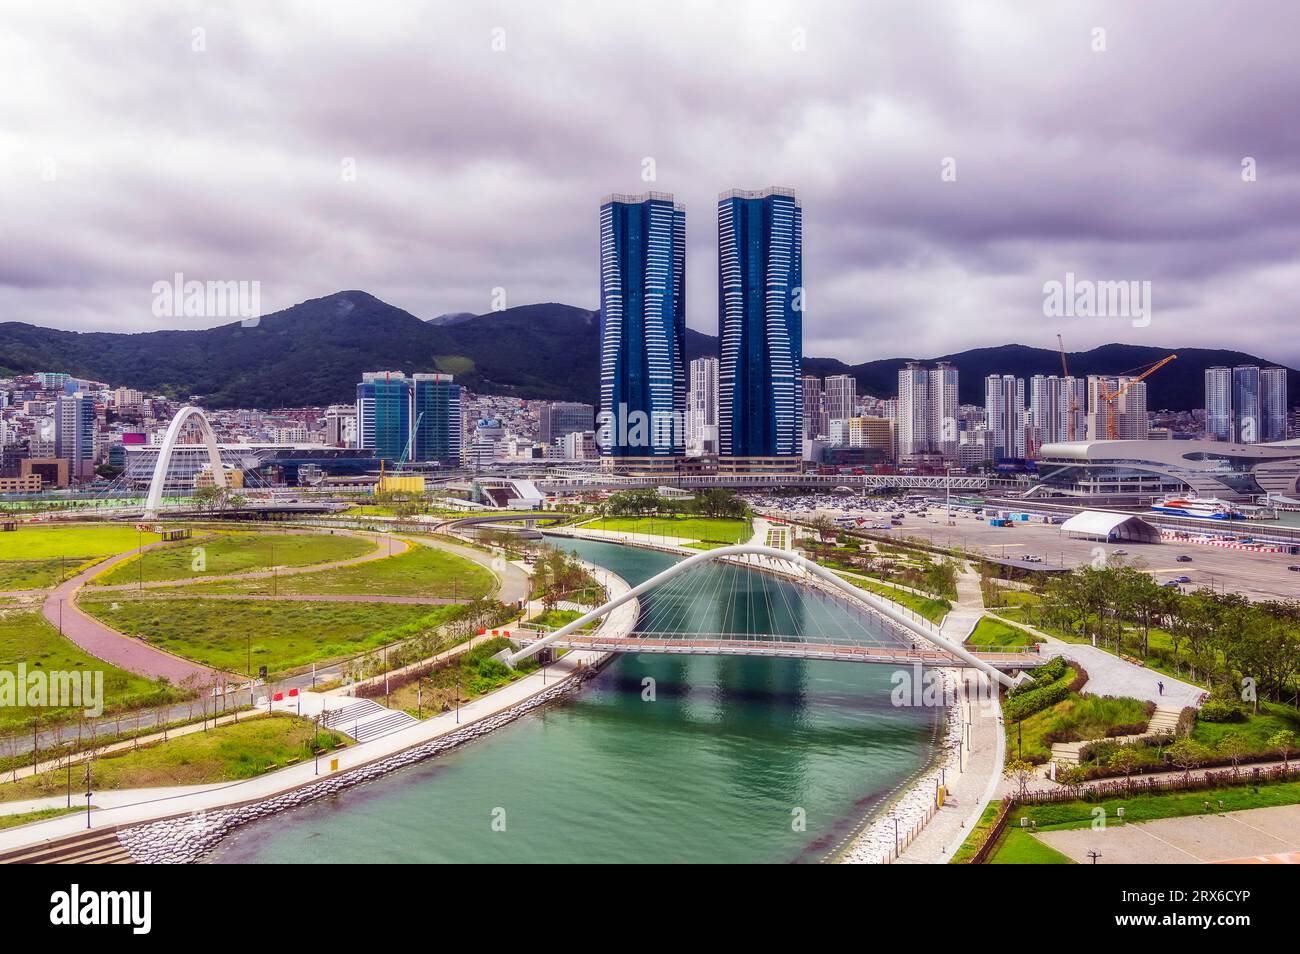 South Korea, Busan, Cloudy sky over bridge over river flowing through city park Stock Photo